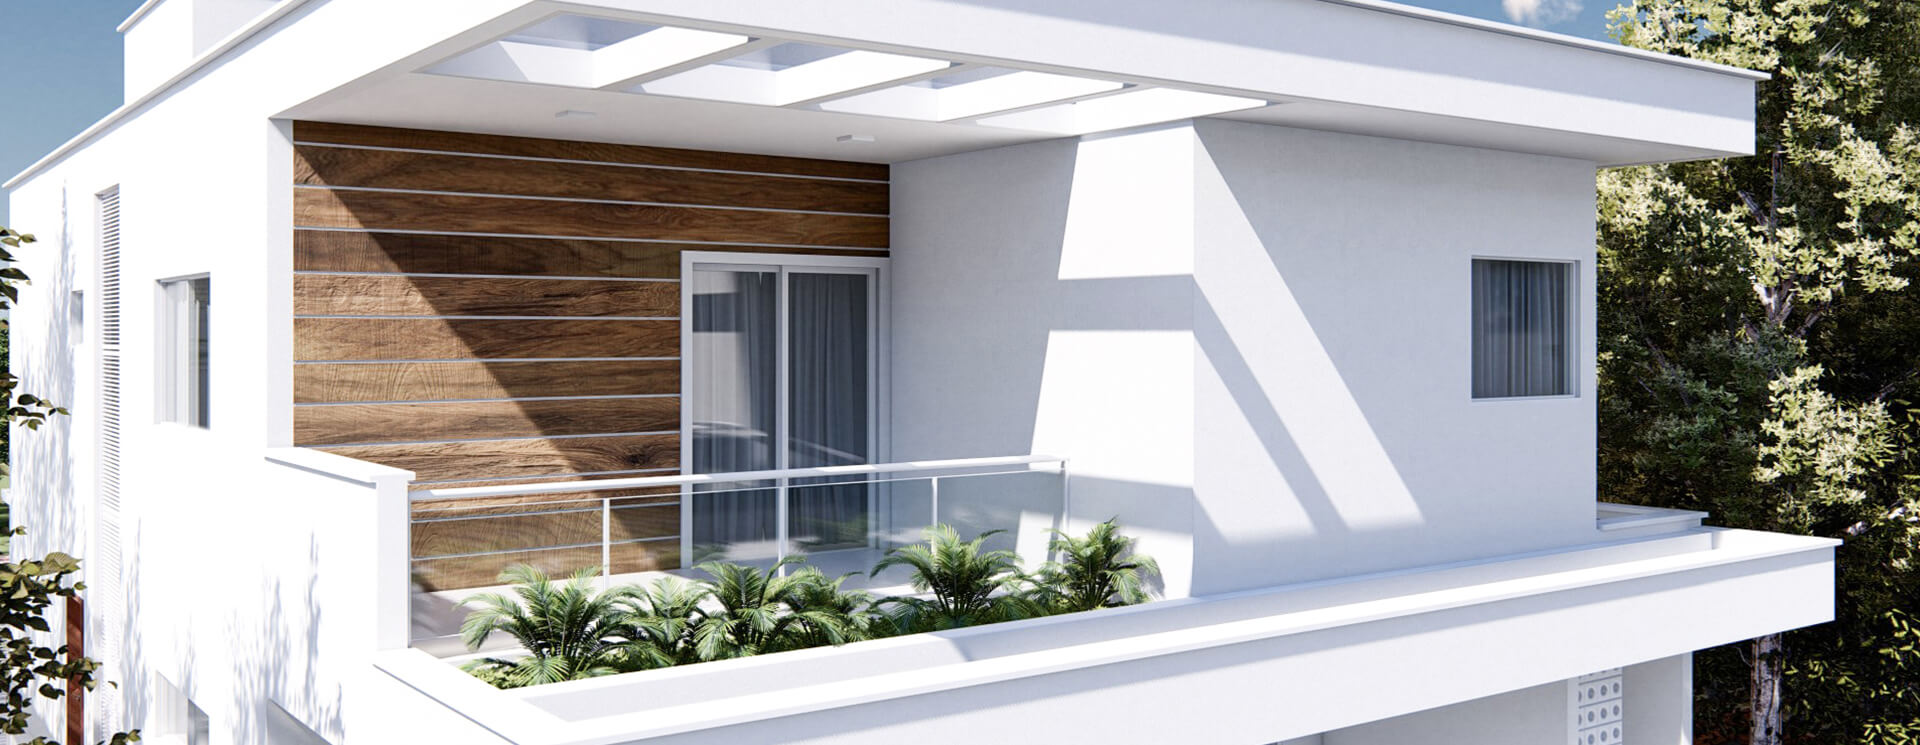 Imagem de um projeto de arquitetura elaborado pelo Arquiteto Lucas Quintanilha para um residencia em Resende-RJ